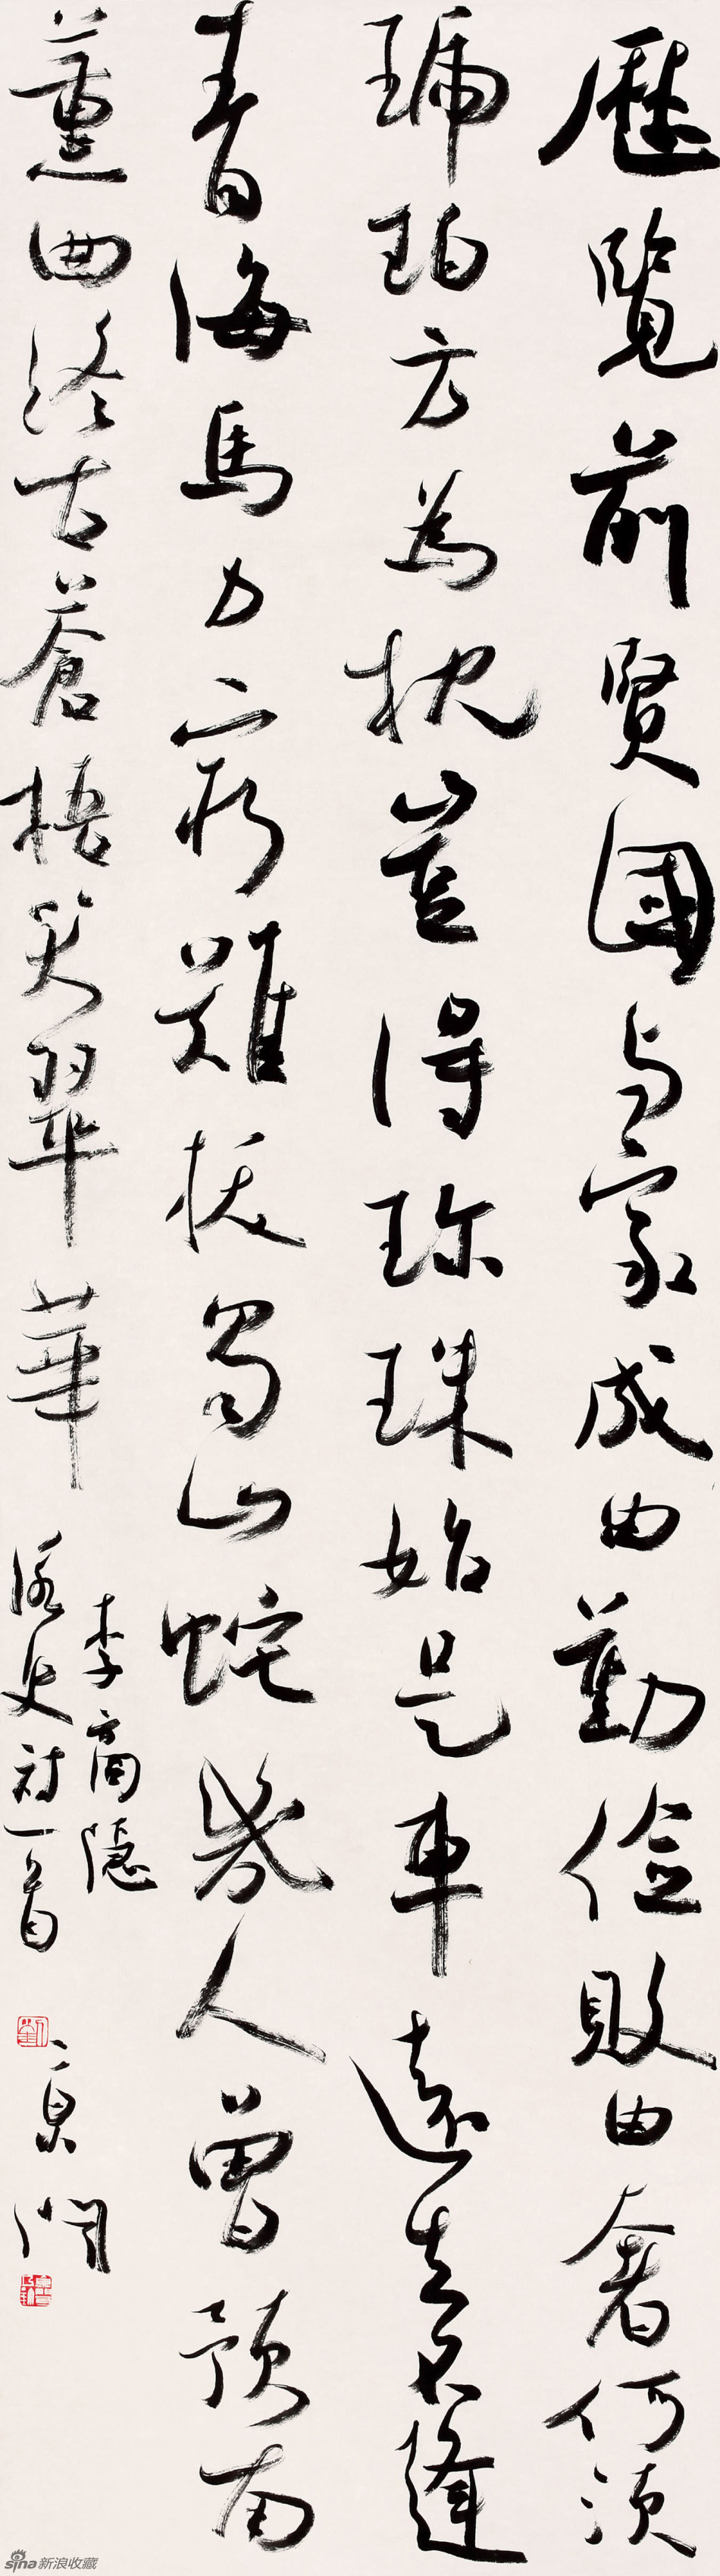 刘京闻书法作品欣赏(图11)